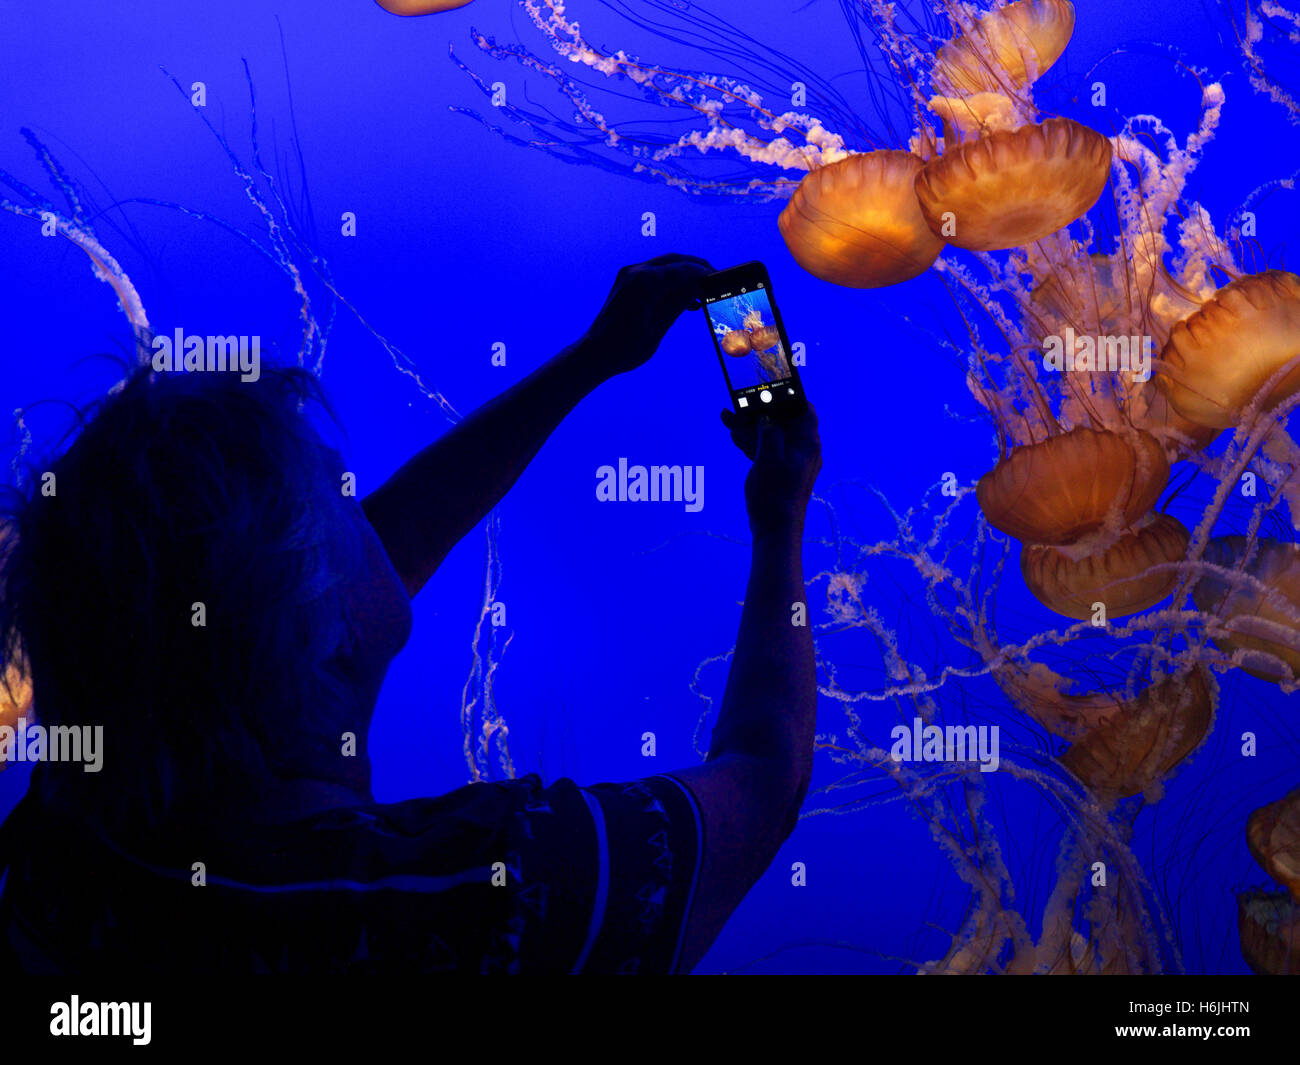 Woman holding Apple smartphone iPhone 5S'enregistrer des images de méduses dans la baie de Monterey Monterey Aquarium California USA Banque D'Images